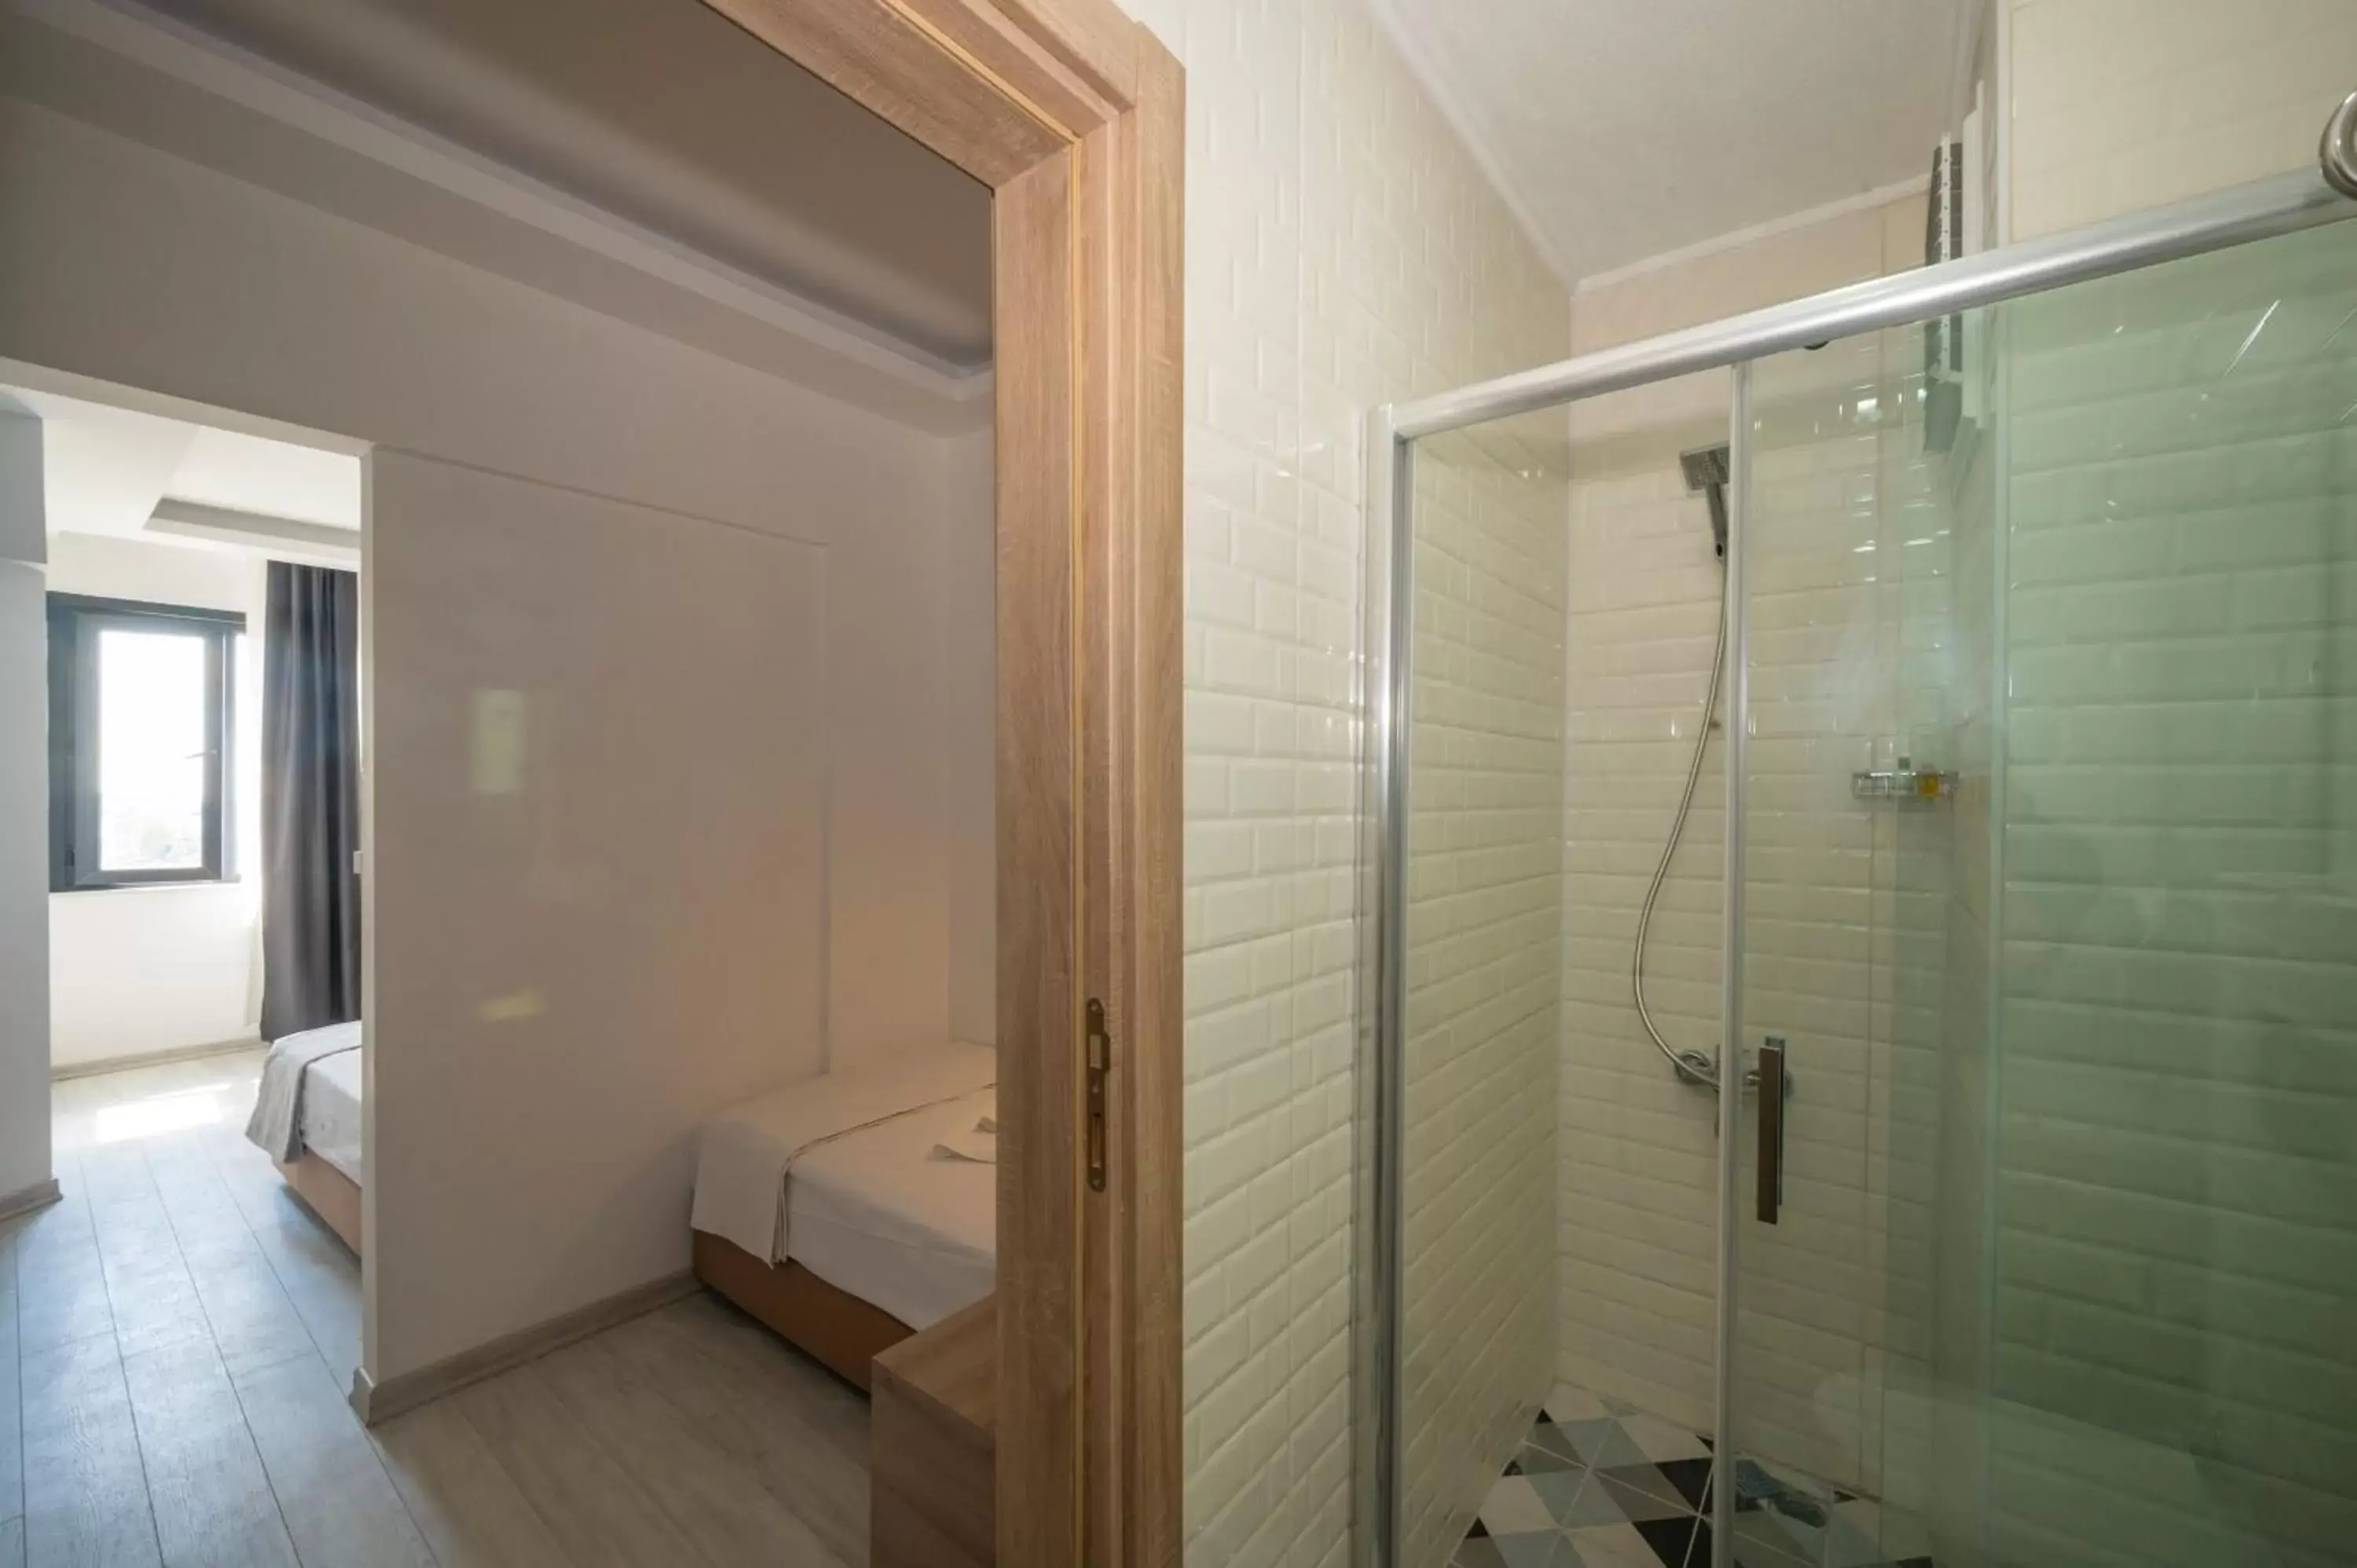 Bathroom in Okda Hotel